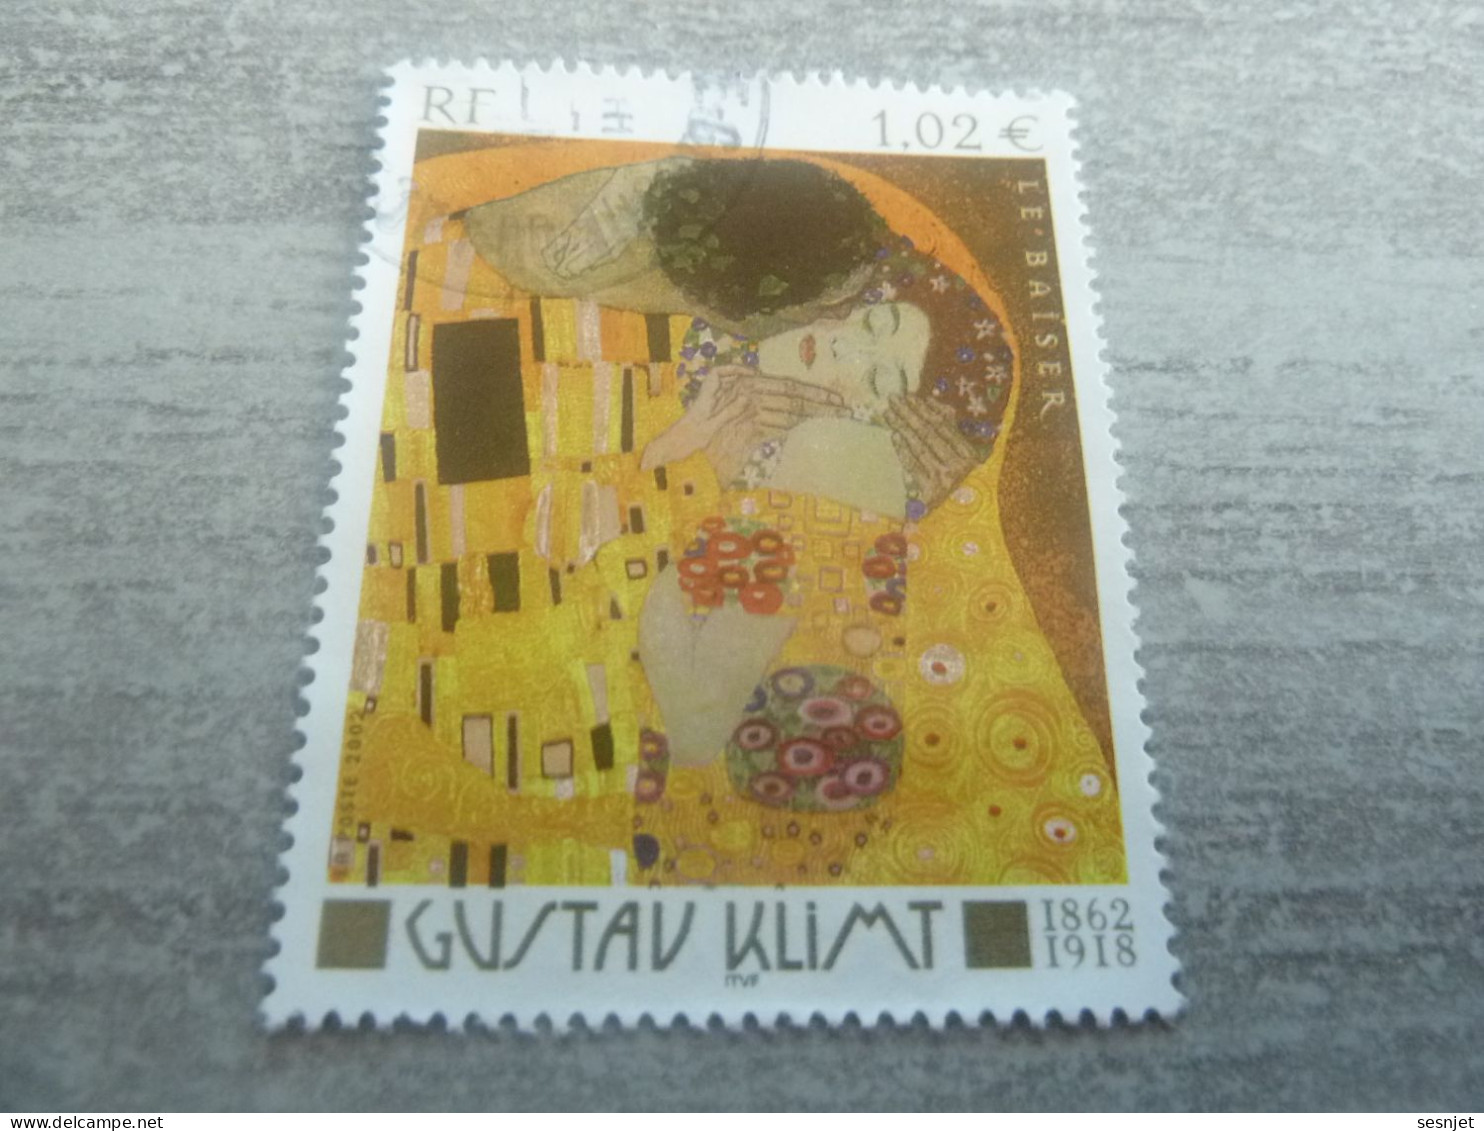 Gustav Klimt (1862-1918) - Le Baiser - 1.02 € - Yt 3461 - Multicolore - Oblitéré - Année 2002 - - Gebraucht